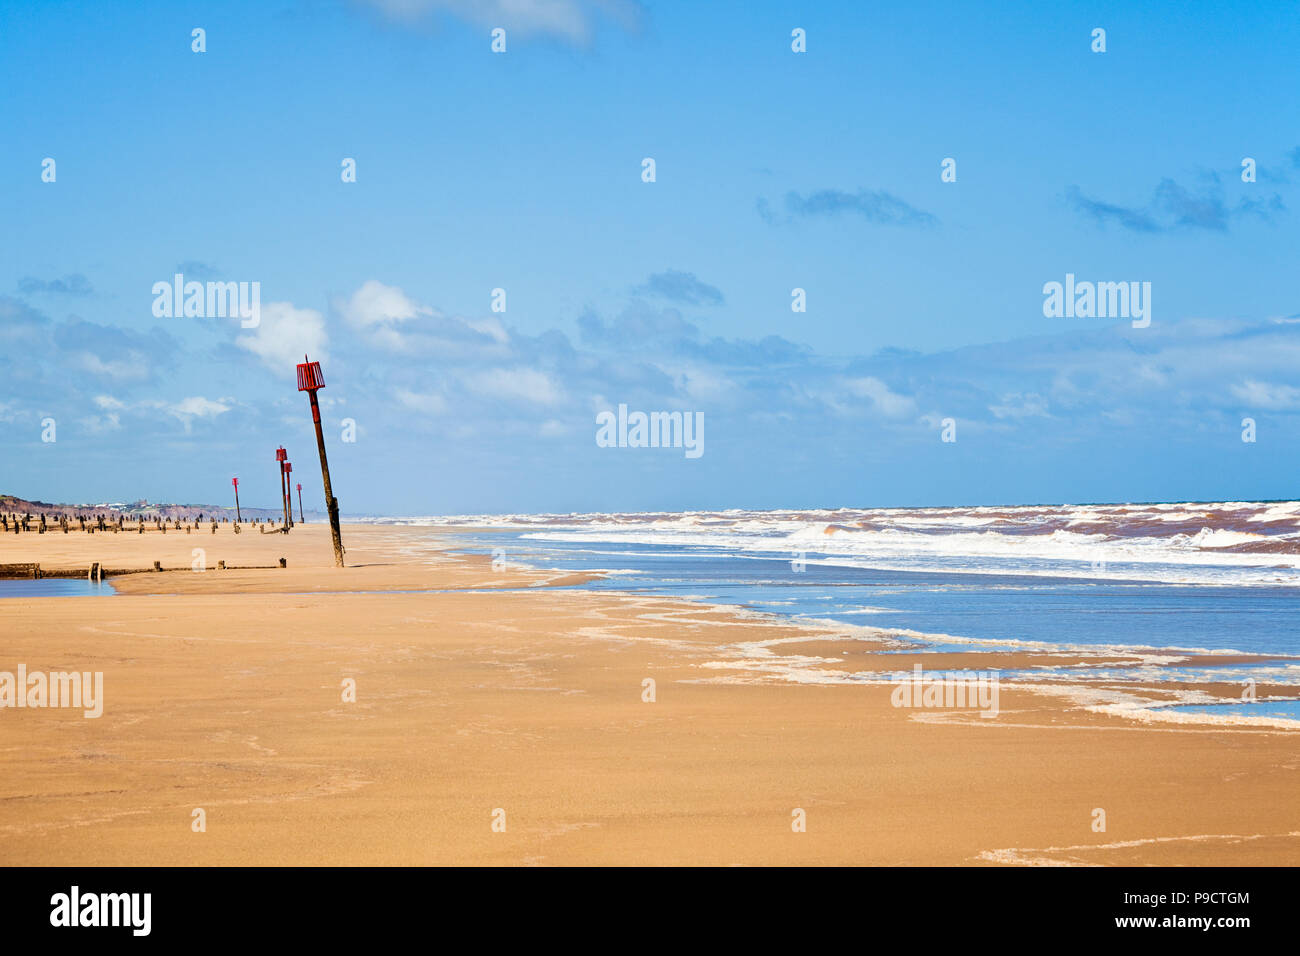 Buhnen und Beacons auf der lange Sandstrand Küste bei Withernsea, East Yorkshire, England, Großbritannien Stockfoto